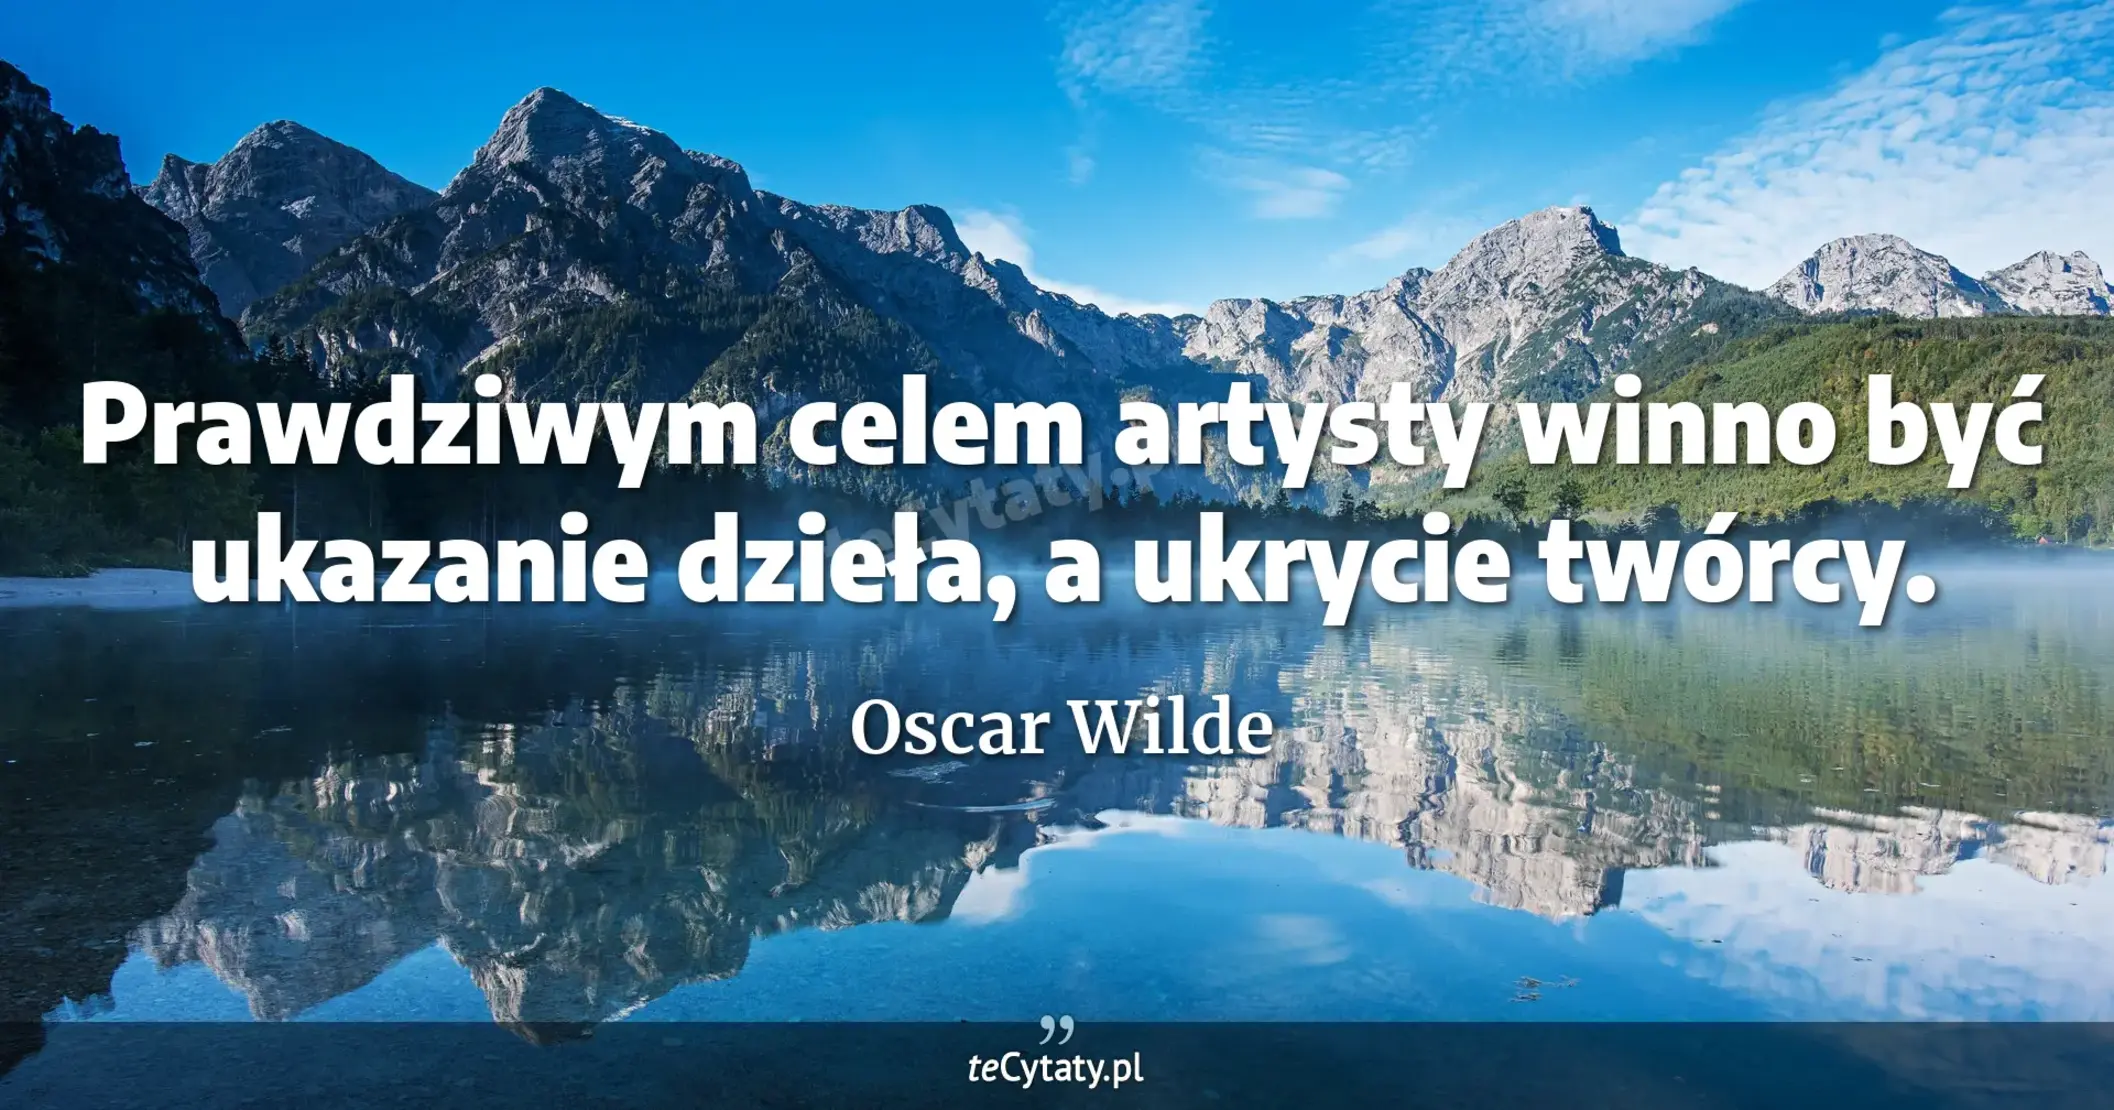 Prawdziwym celem artysty winno być ukazanie dzieła, a ukrycie twórcy. - Oscar Wilde